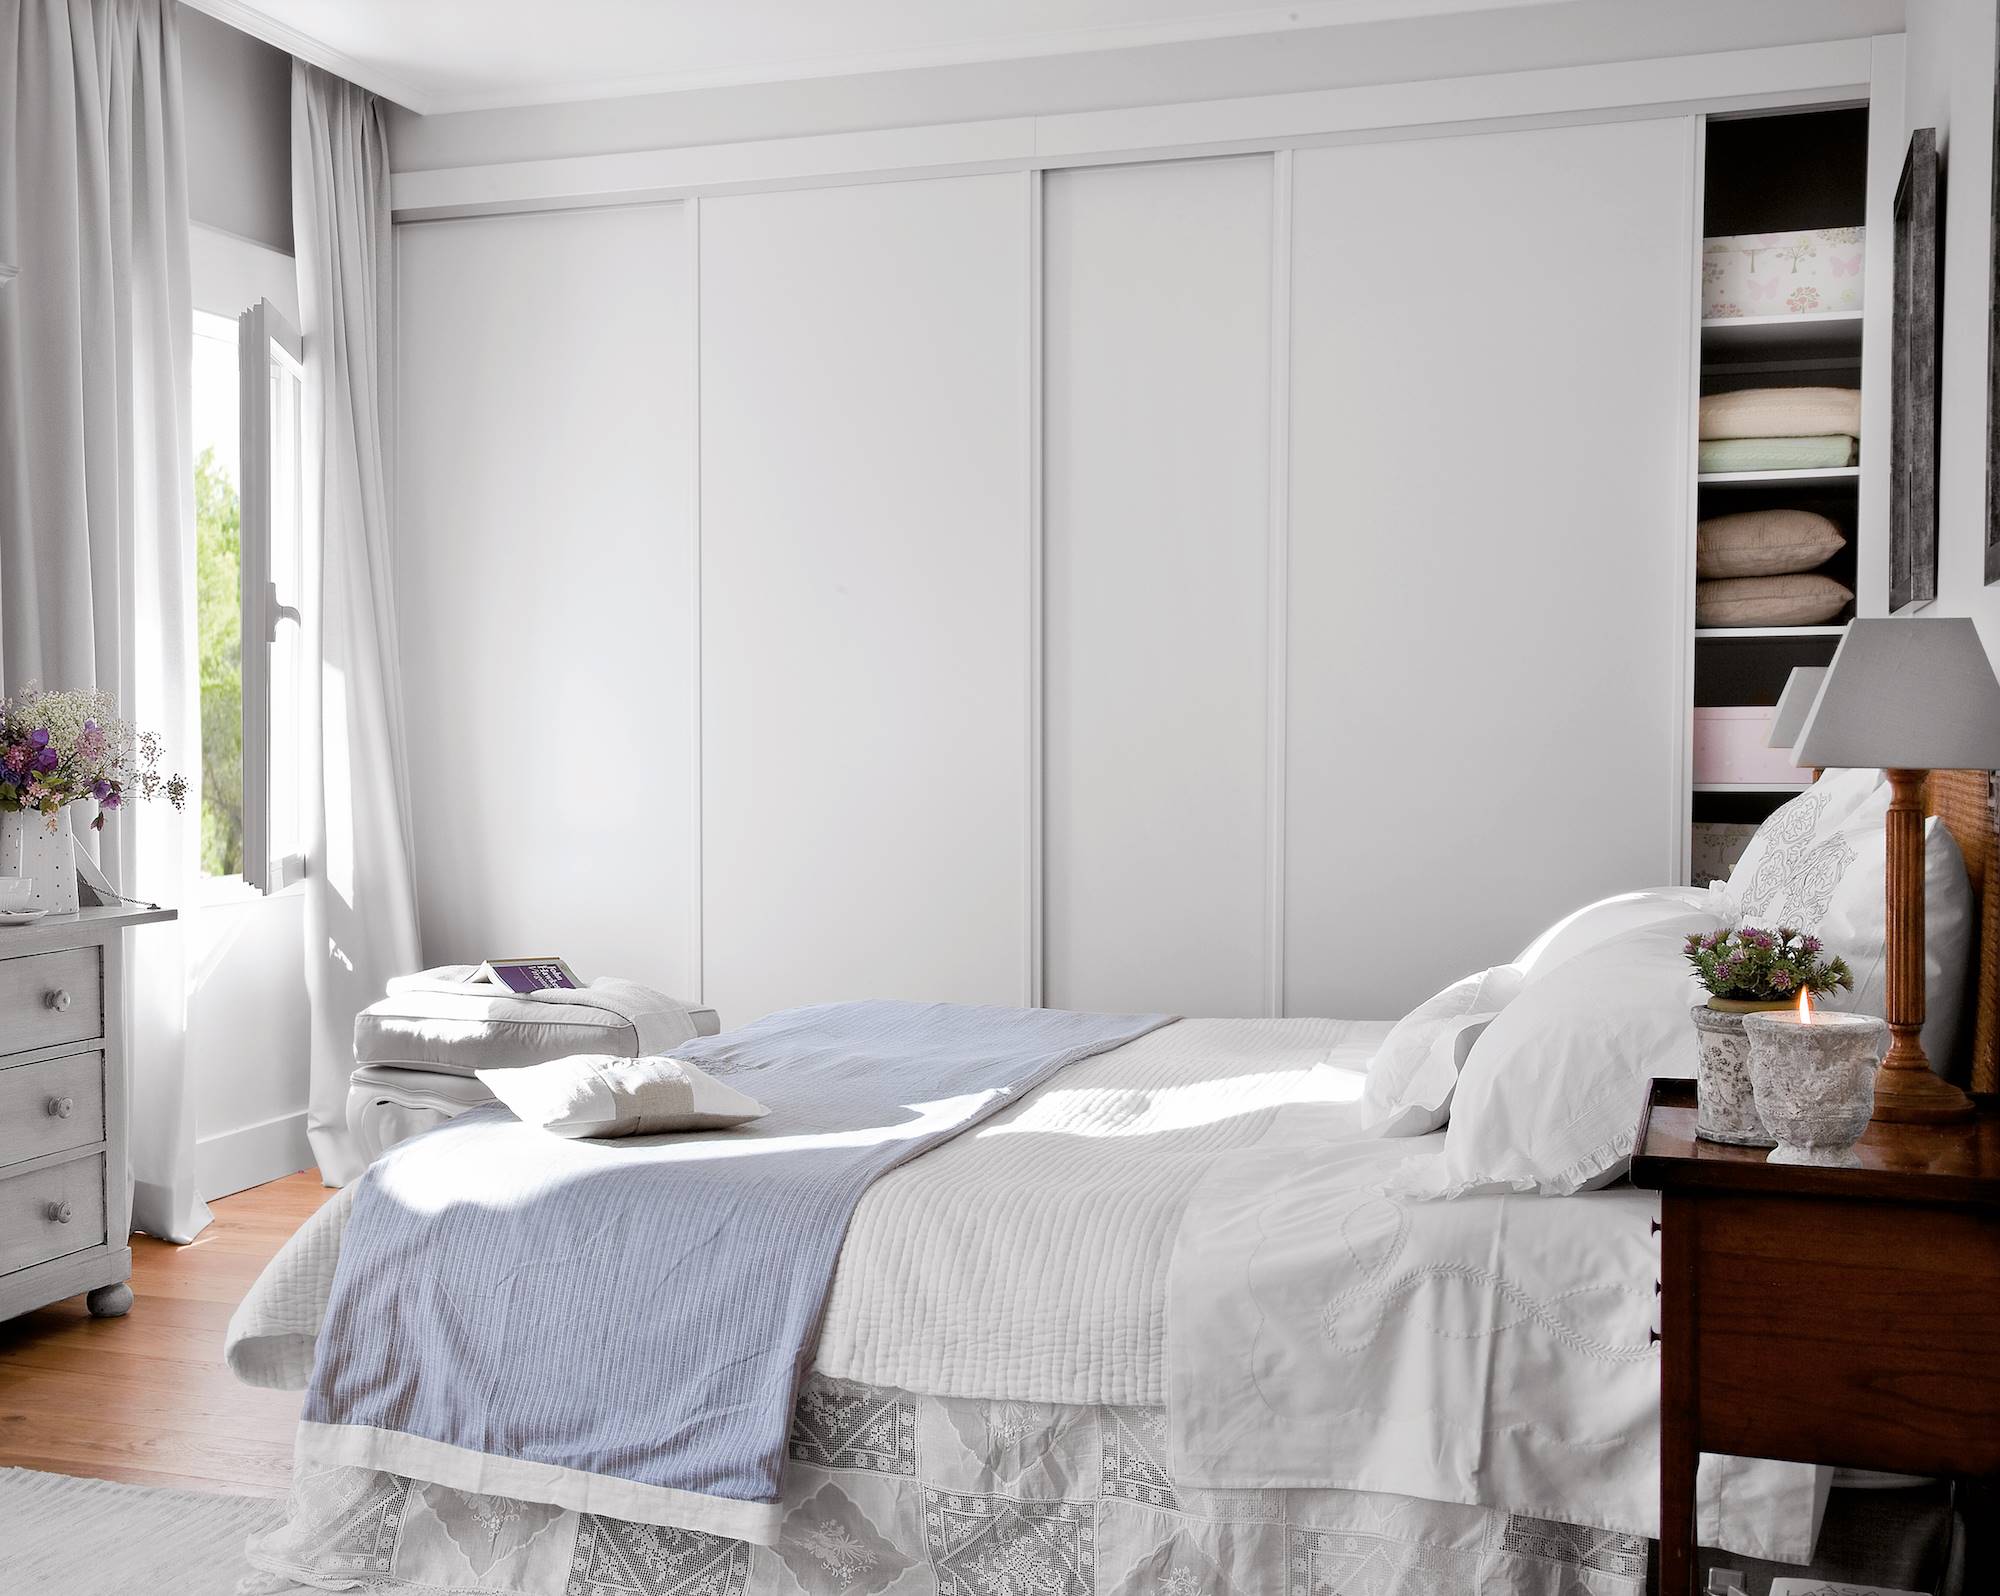 DOrmitorio con cama, ropa de cama blanca, cortinas y armario empotrado en gris claro.